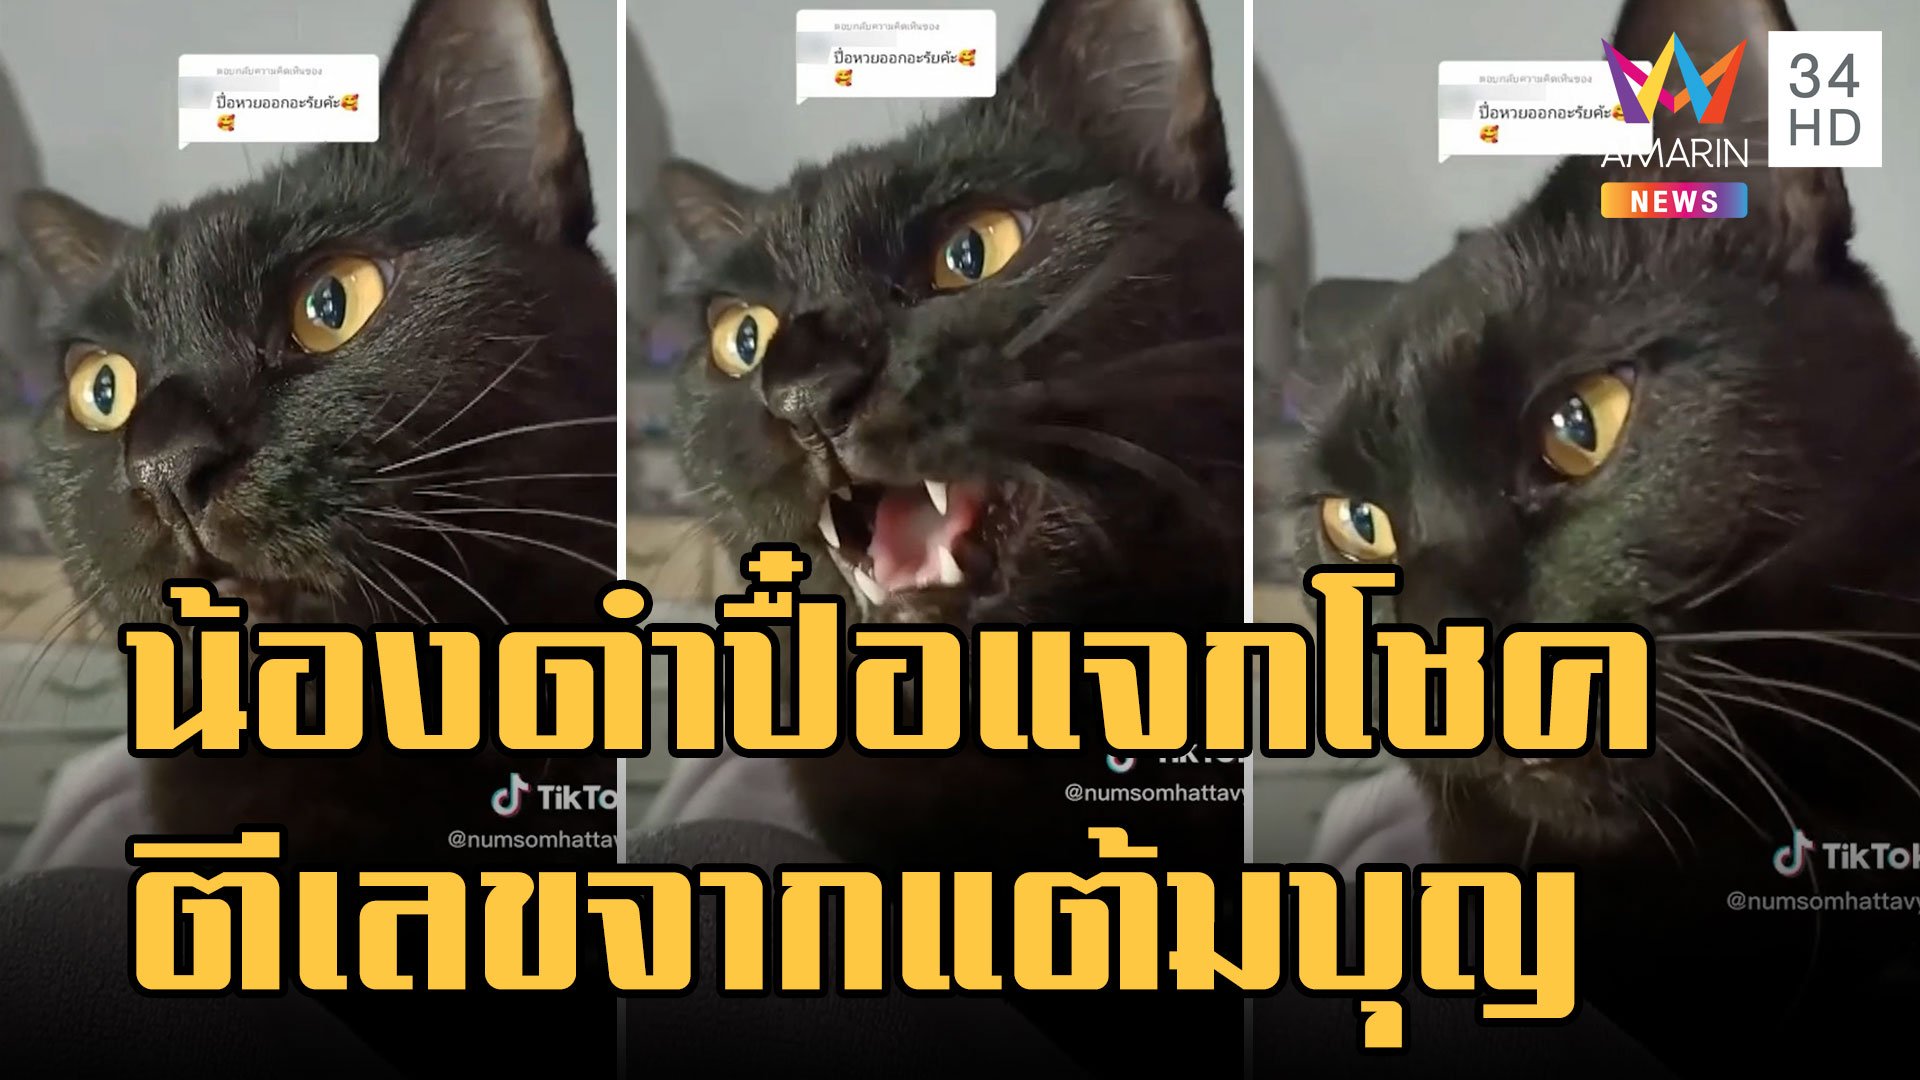 "ดำปื๋อขี้คุย" น้องแมวดำแจกโชค ฟังออกไม่ออกอยู่กับแต้มบุญ | ข่าวอรุณอมรินทร์ | 30 ธ.ค. 65 | AMARIN TVHD34